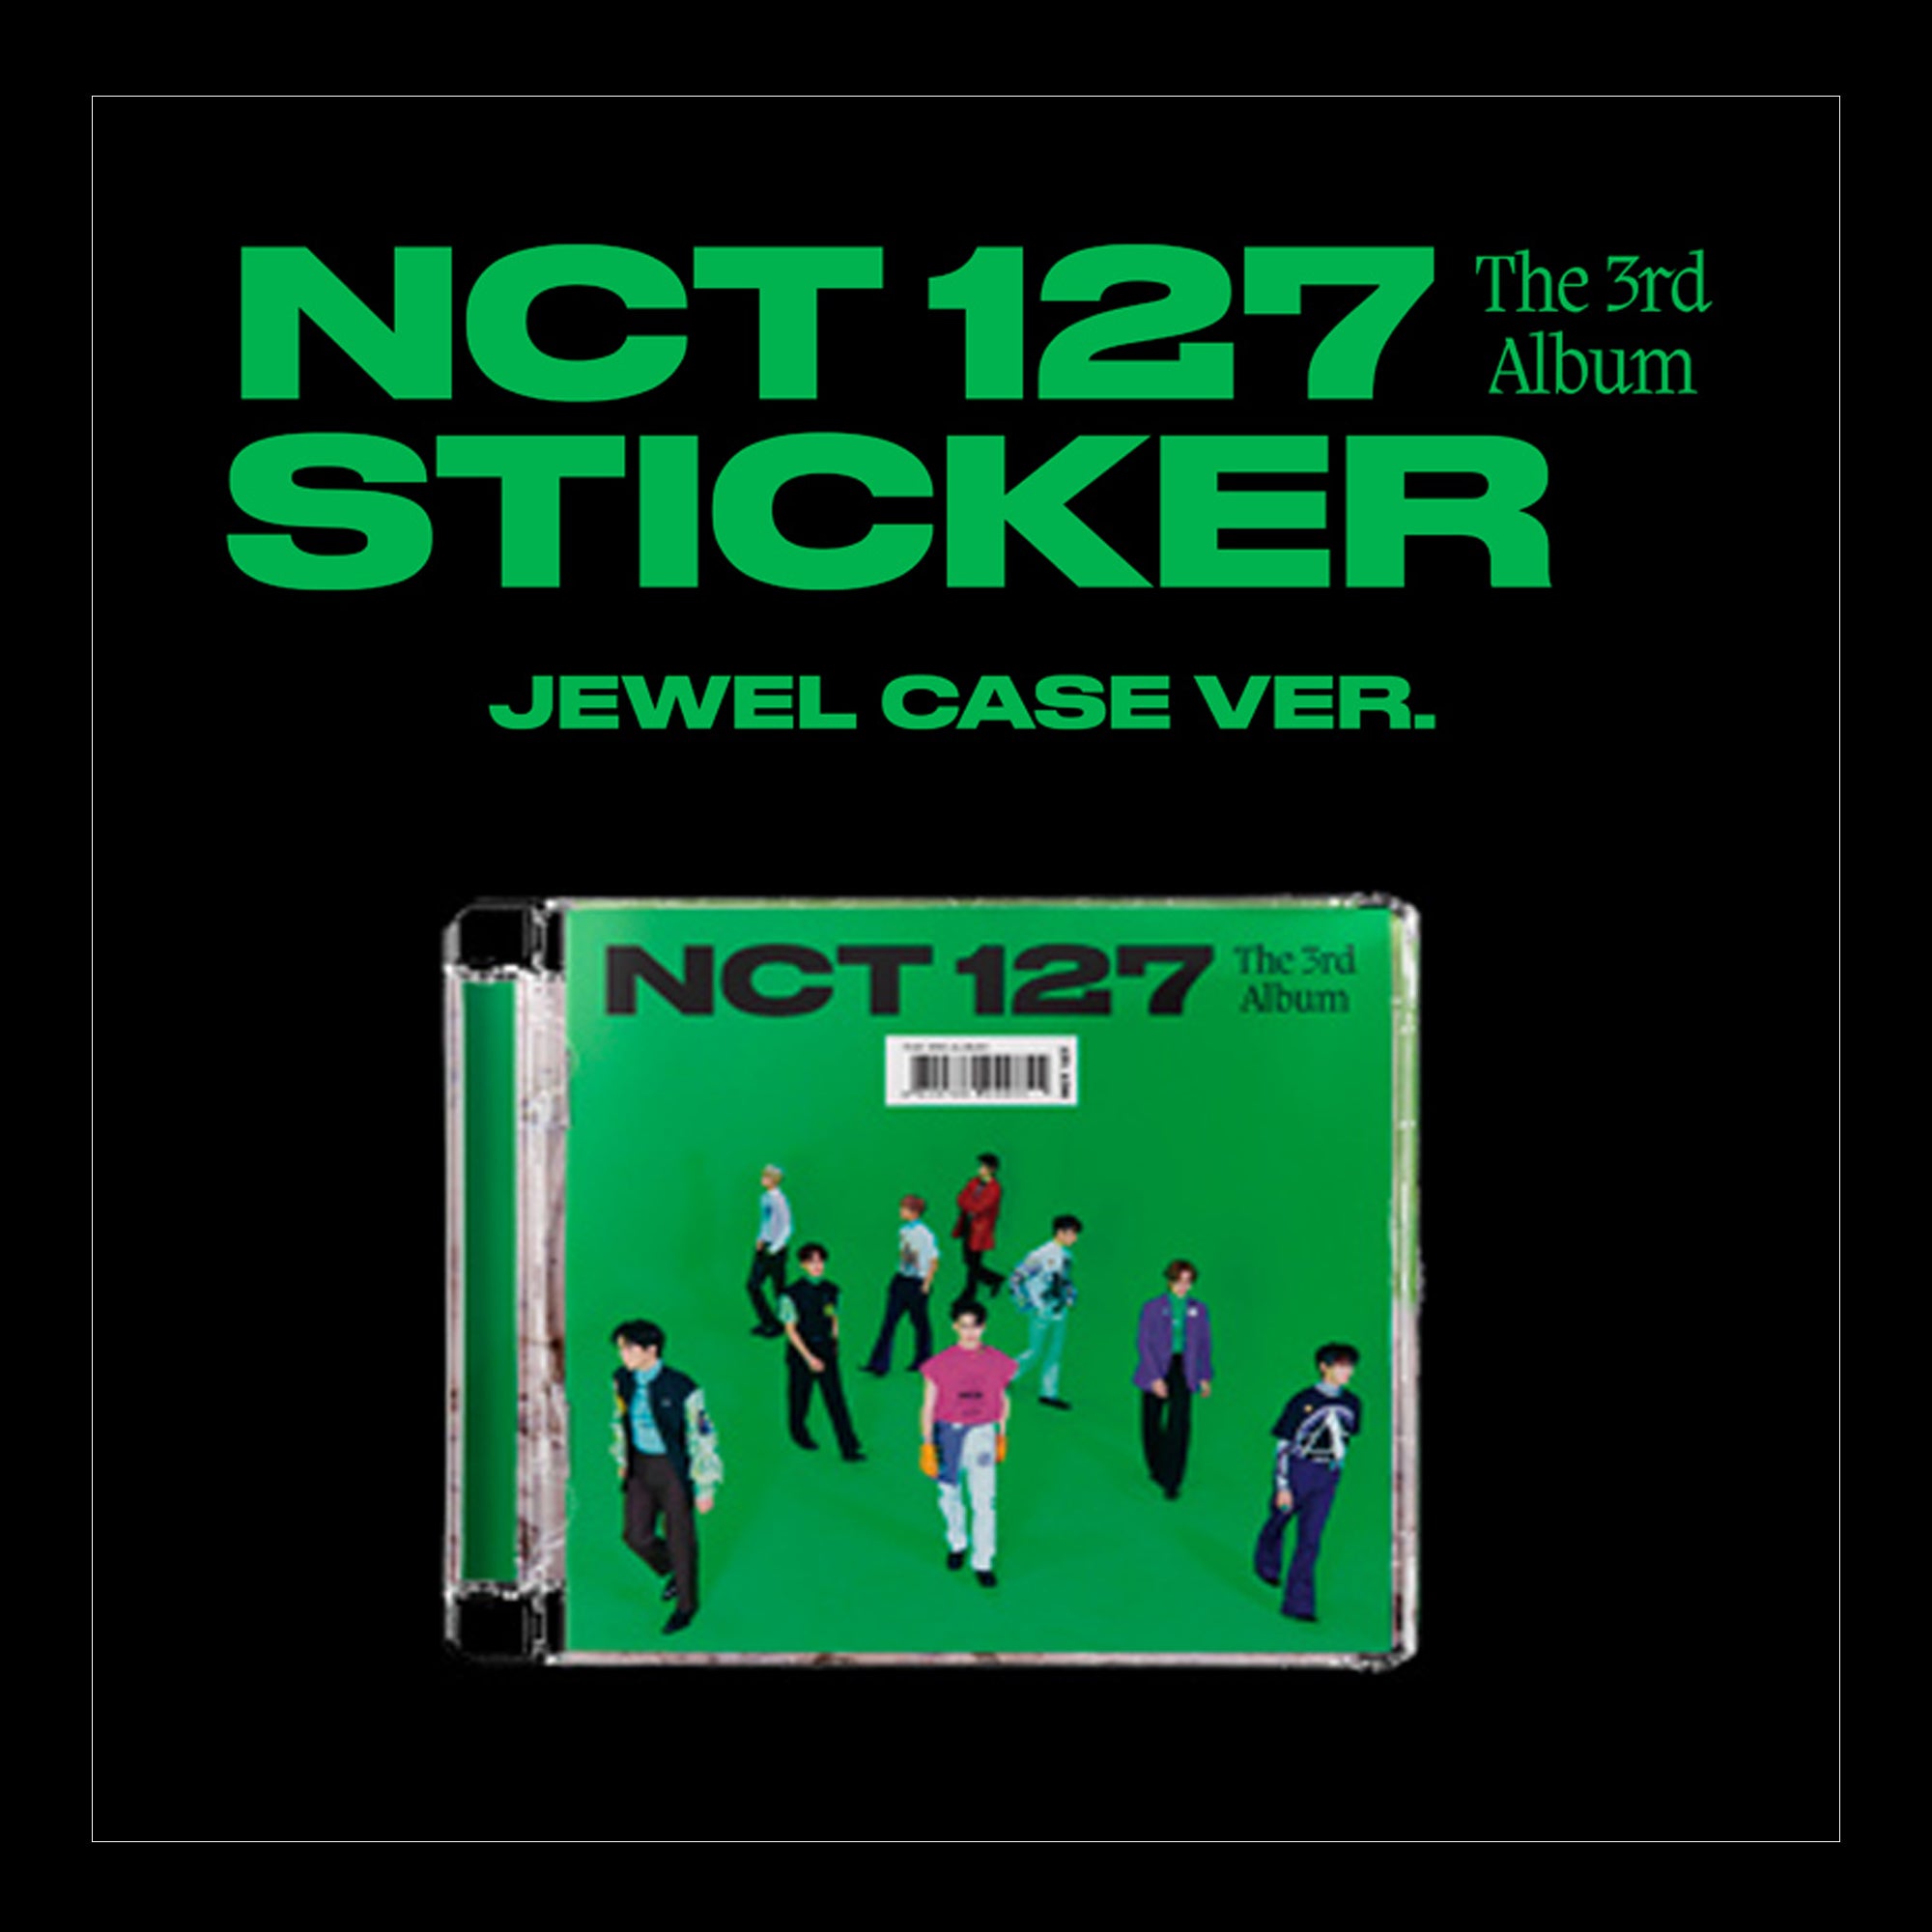 NCT 127 - Sticker (Jewel Case Ver.)